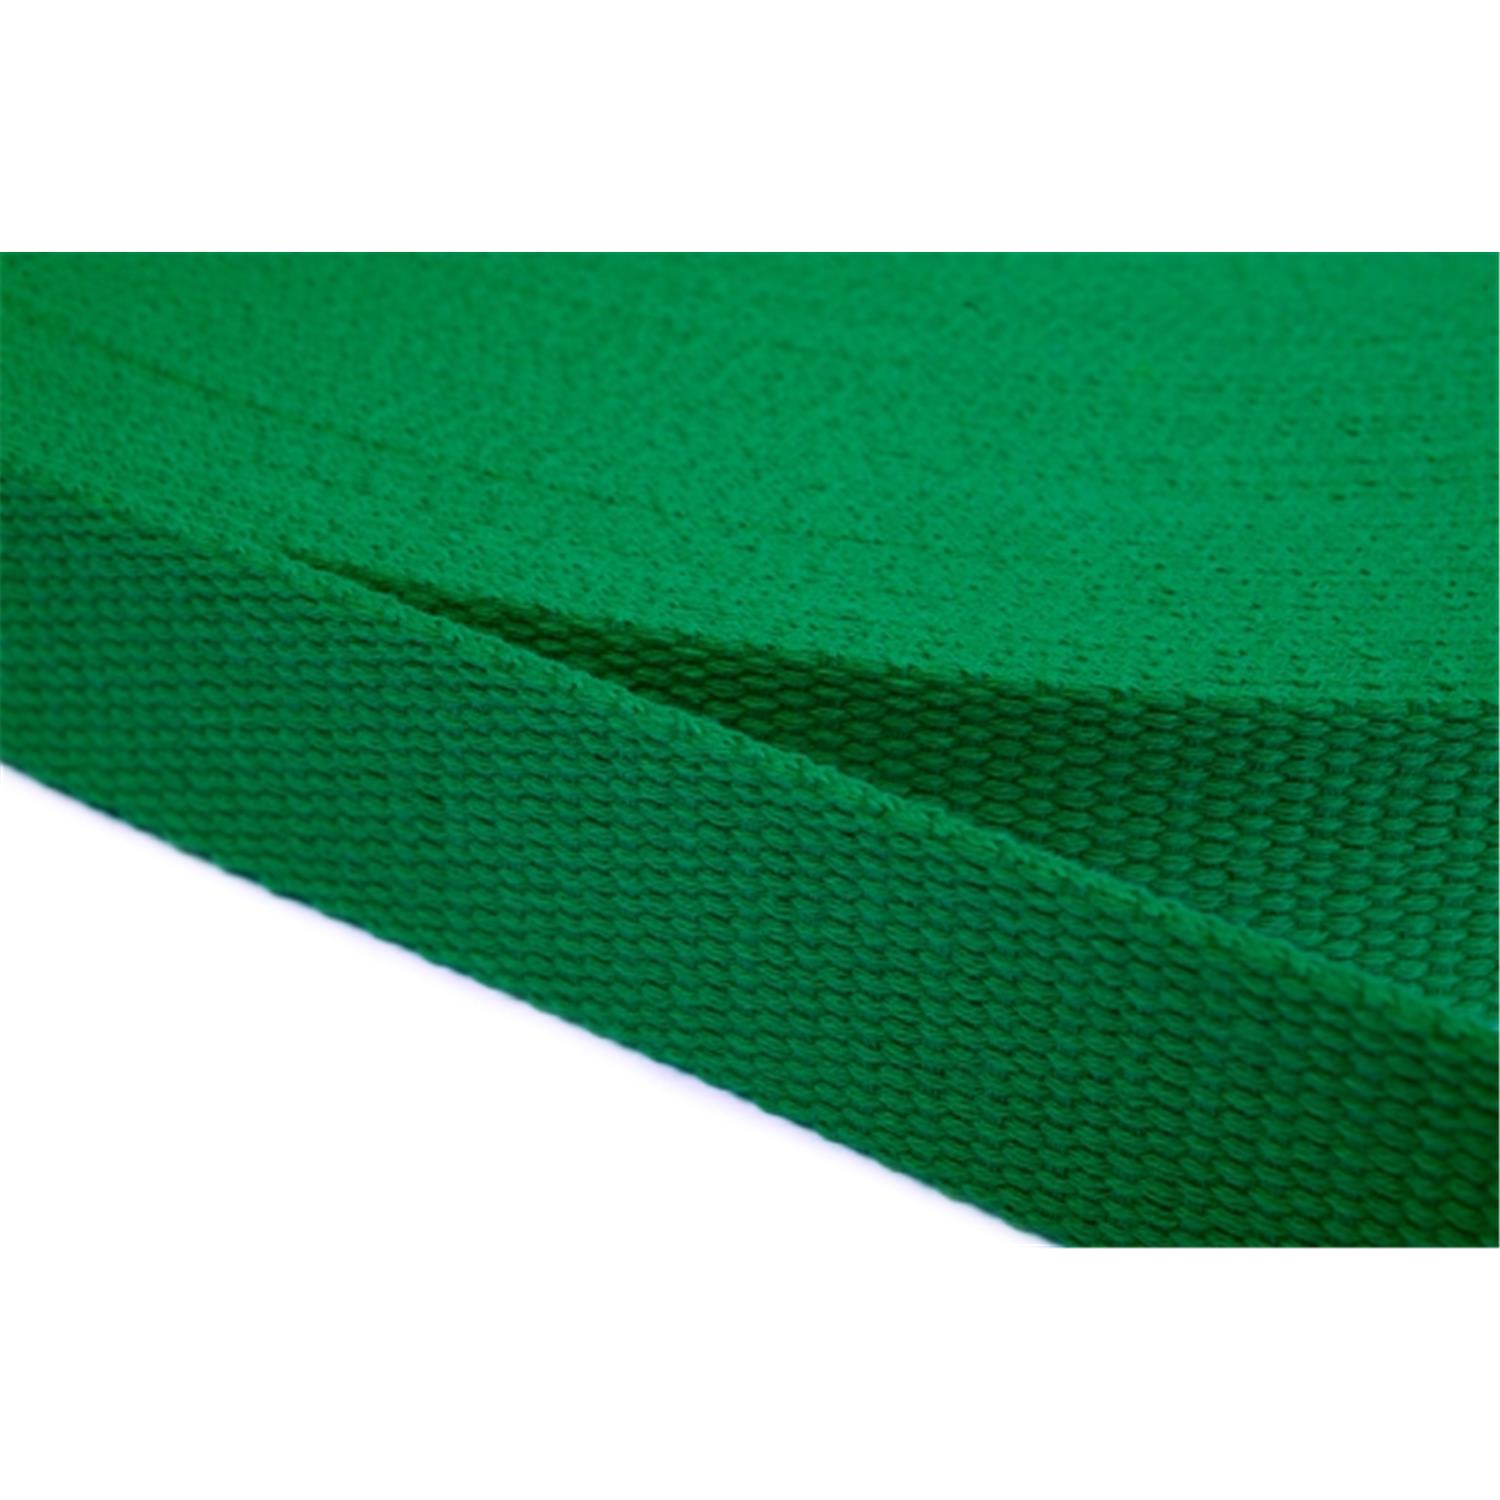 Gurtband aus Baumwolle 50mm in 20 Farben 16 - grün 6 Meter